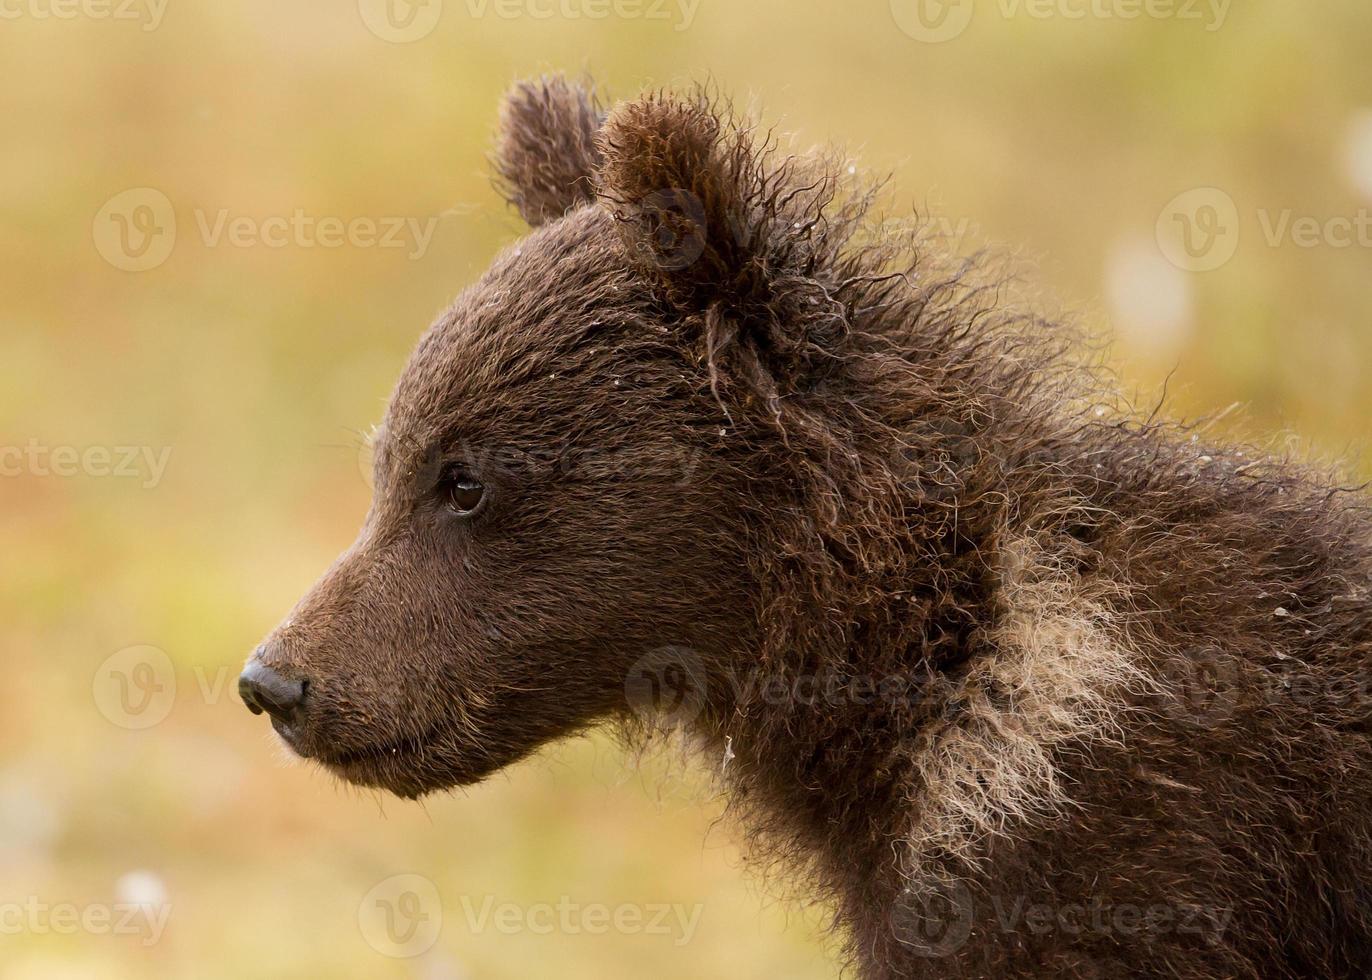 cachorro de oso pardo euroasiático (ursos arctos) foto